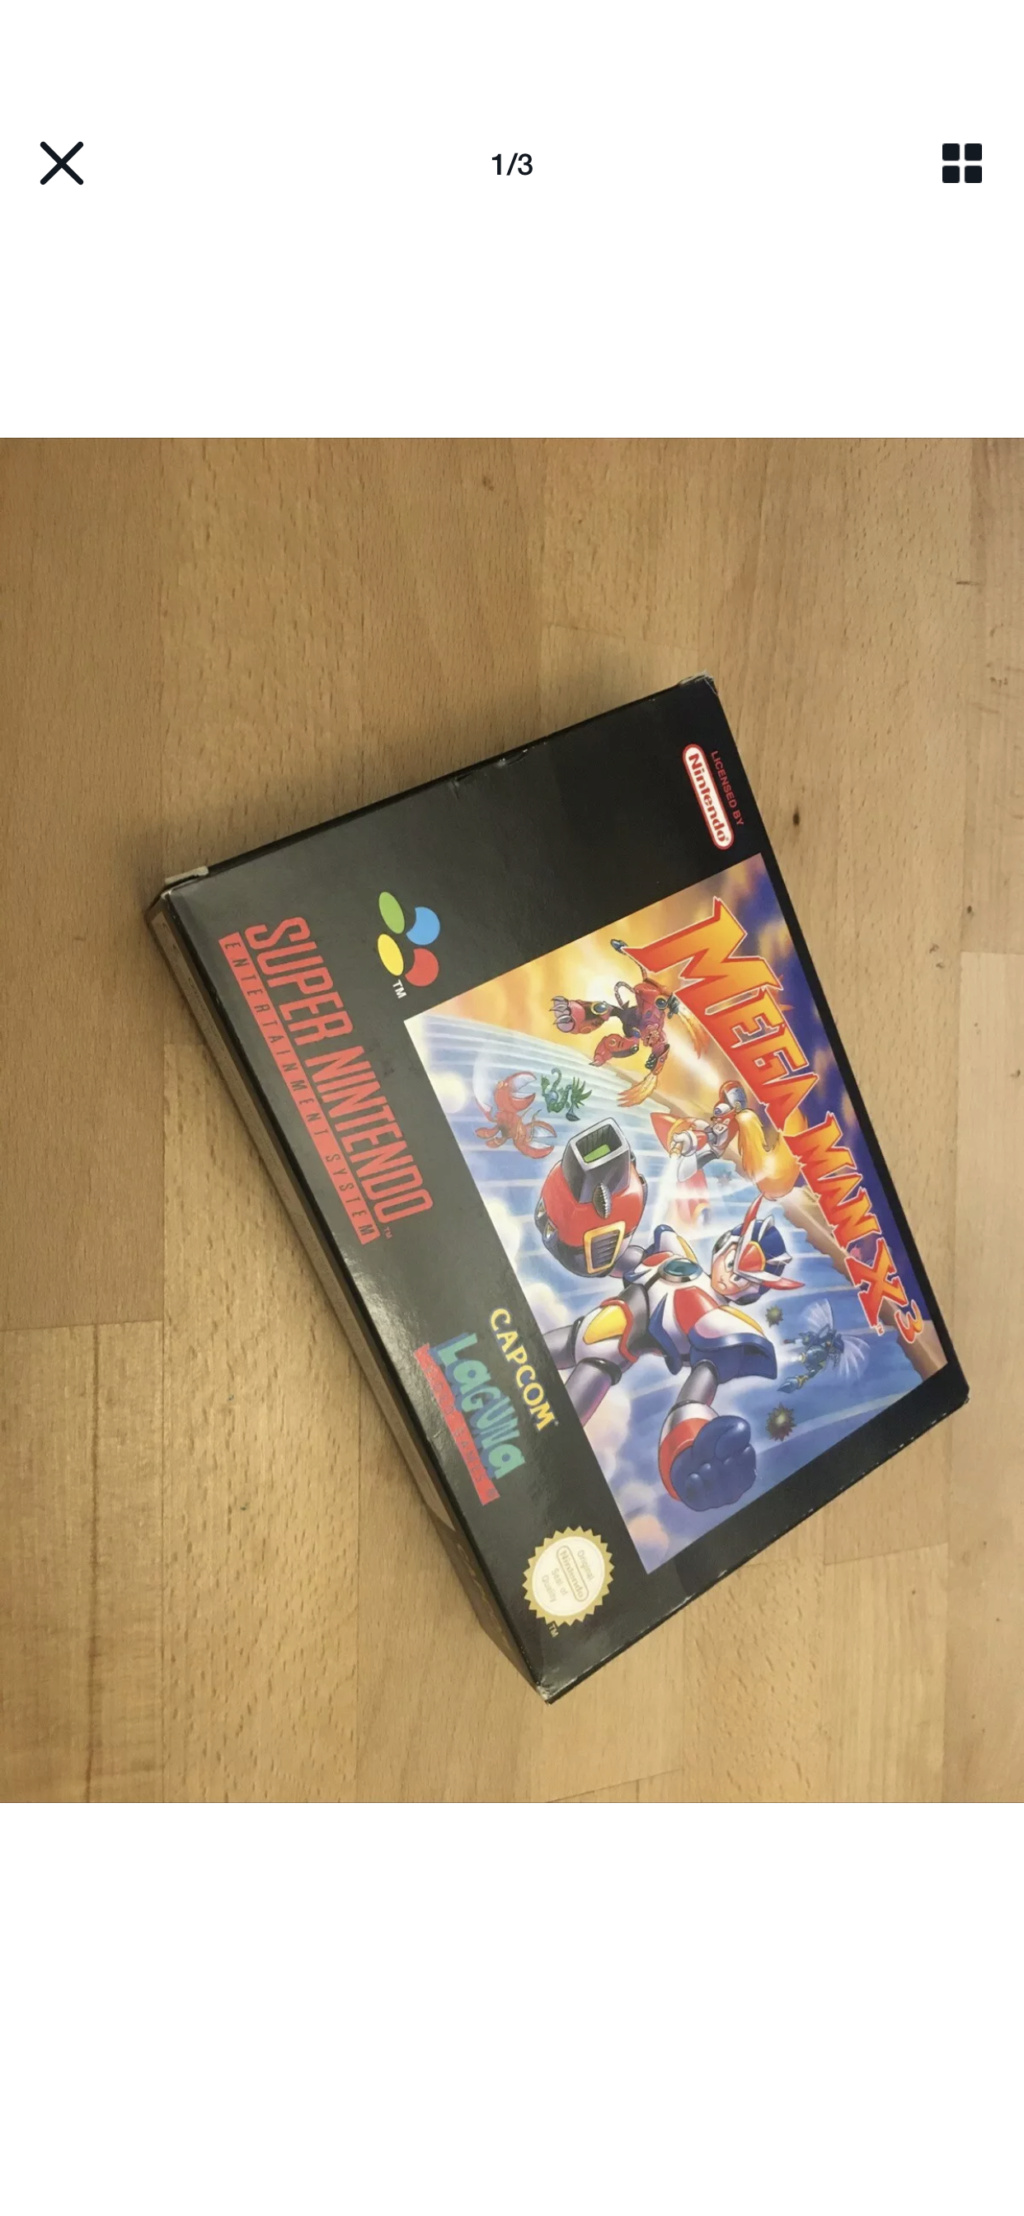 Avis - Mega Man X 3: cote et authenticité  6d6a3810